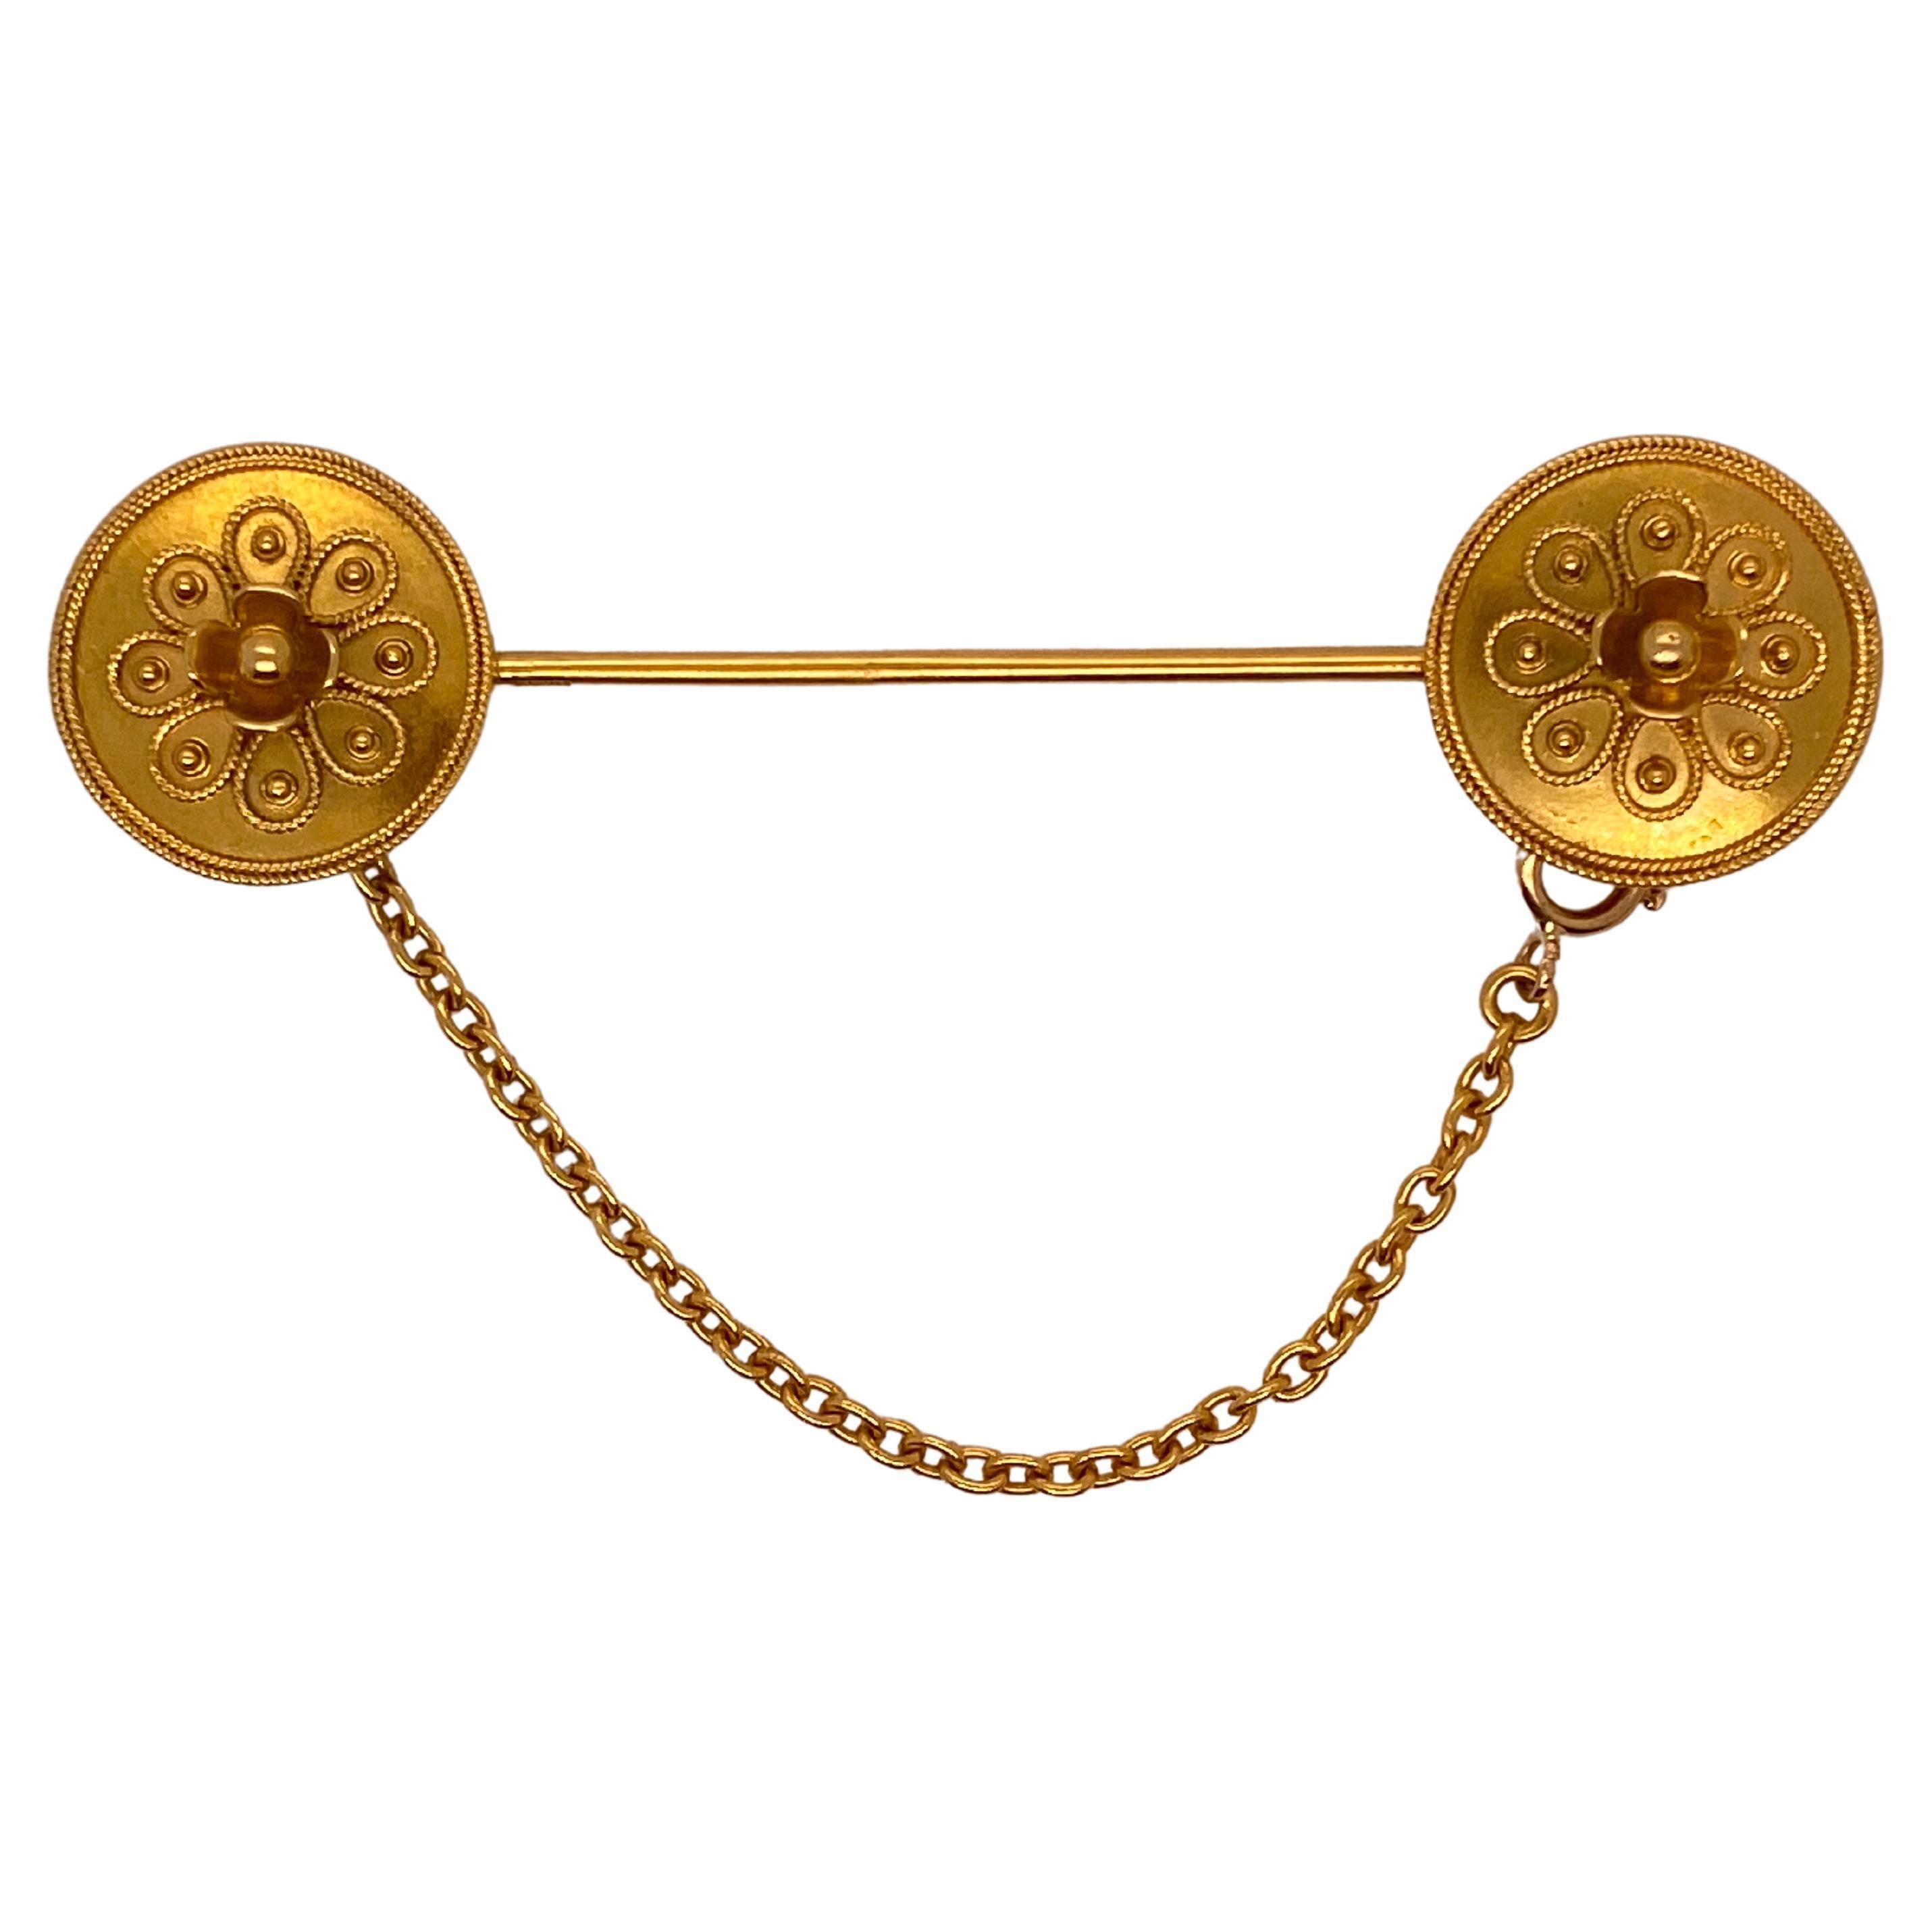 Jabot-Brosche im etruskischen Stil aus 15 Karat Gold von Castellani